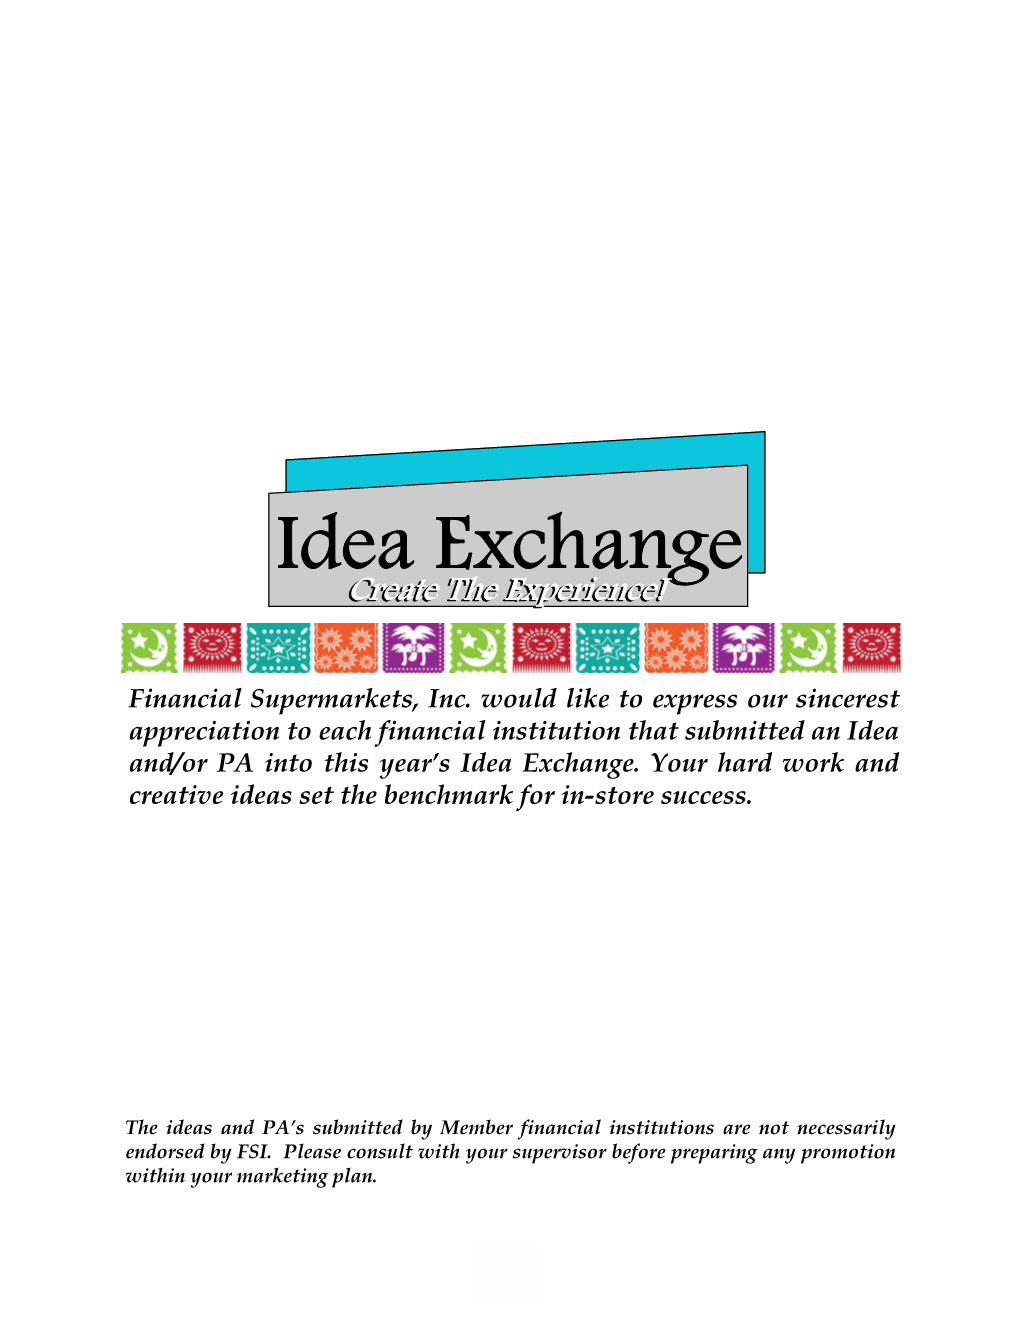 Idea Exchange 2009